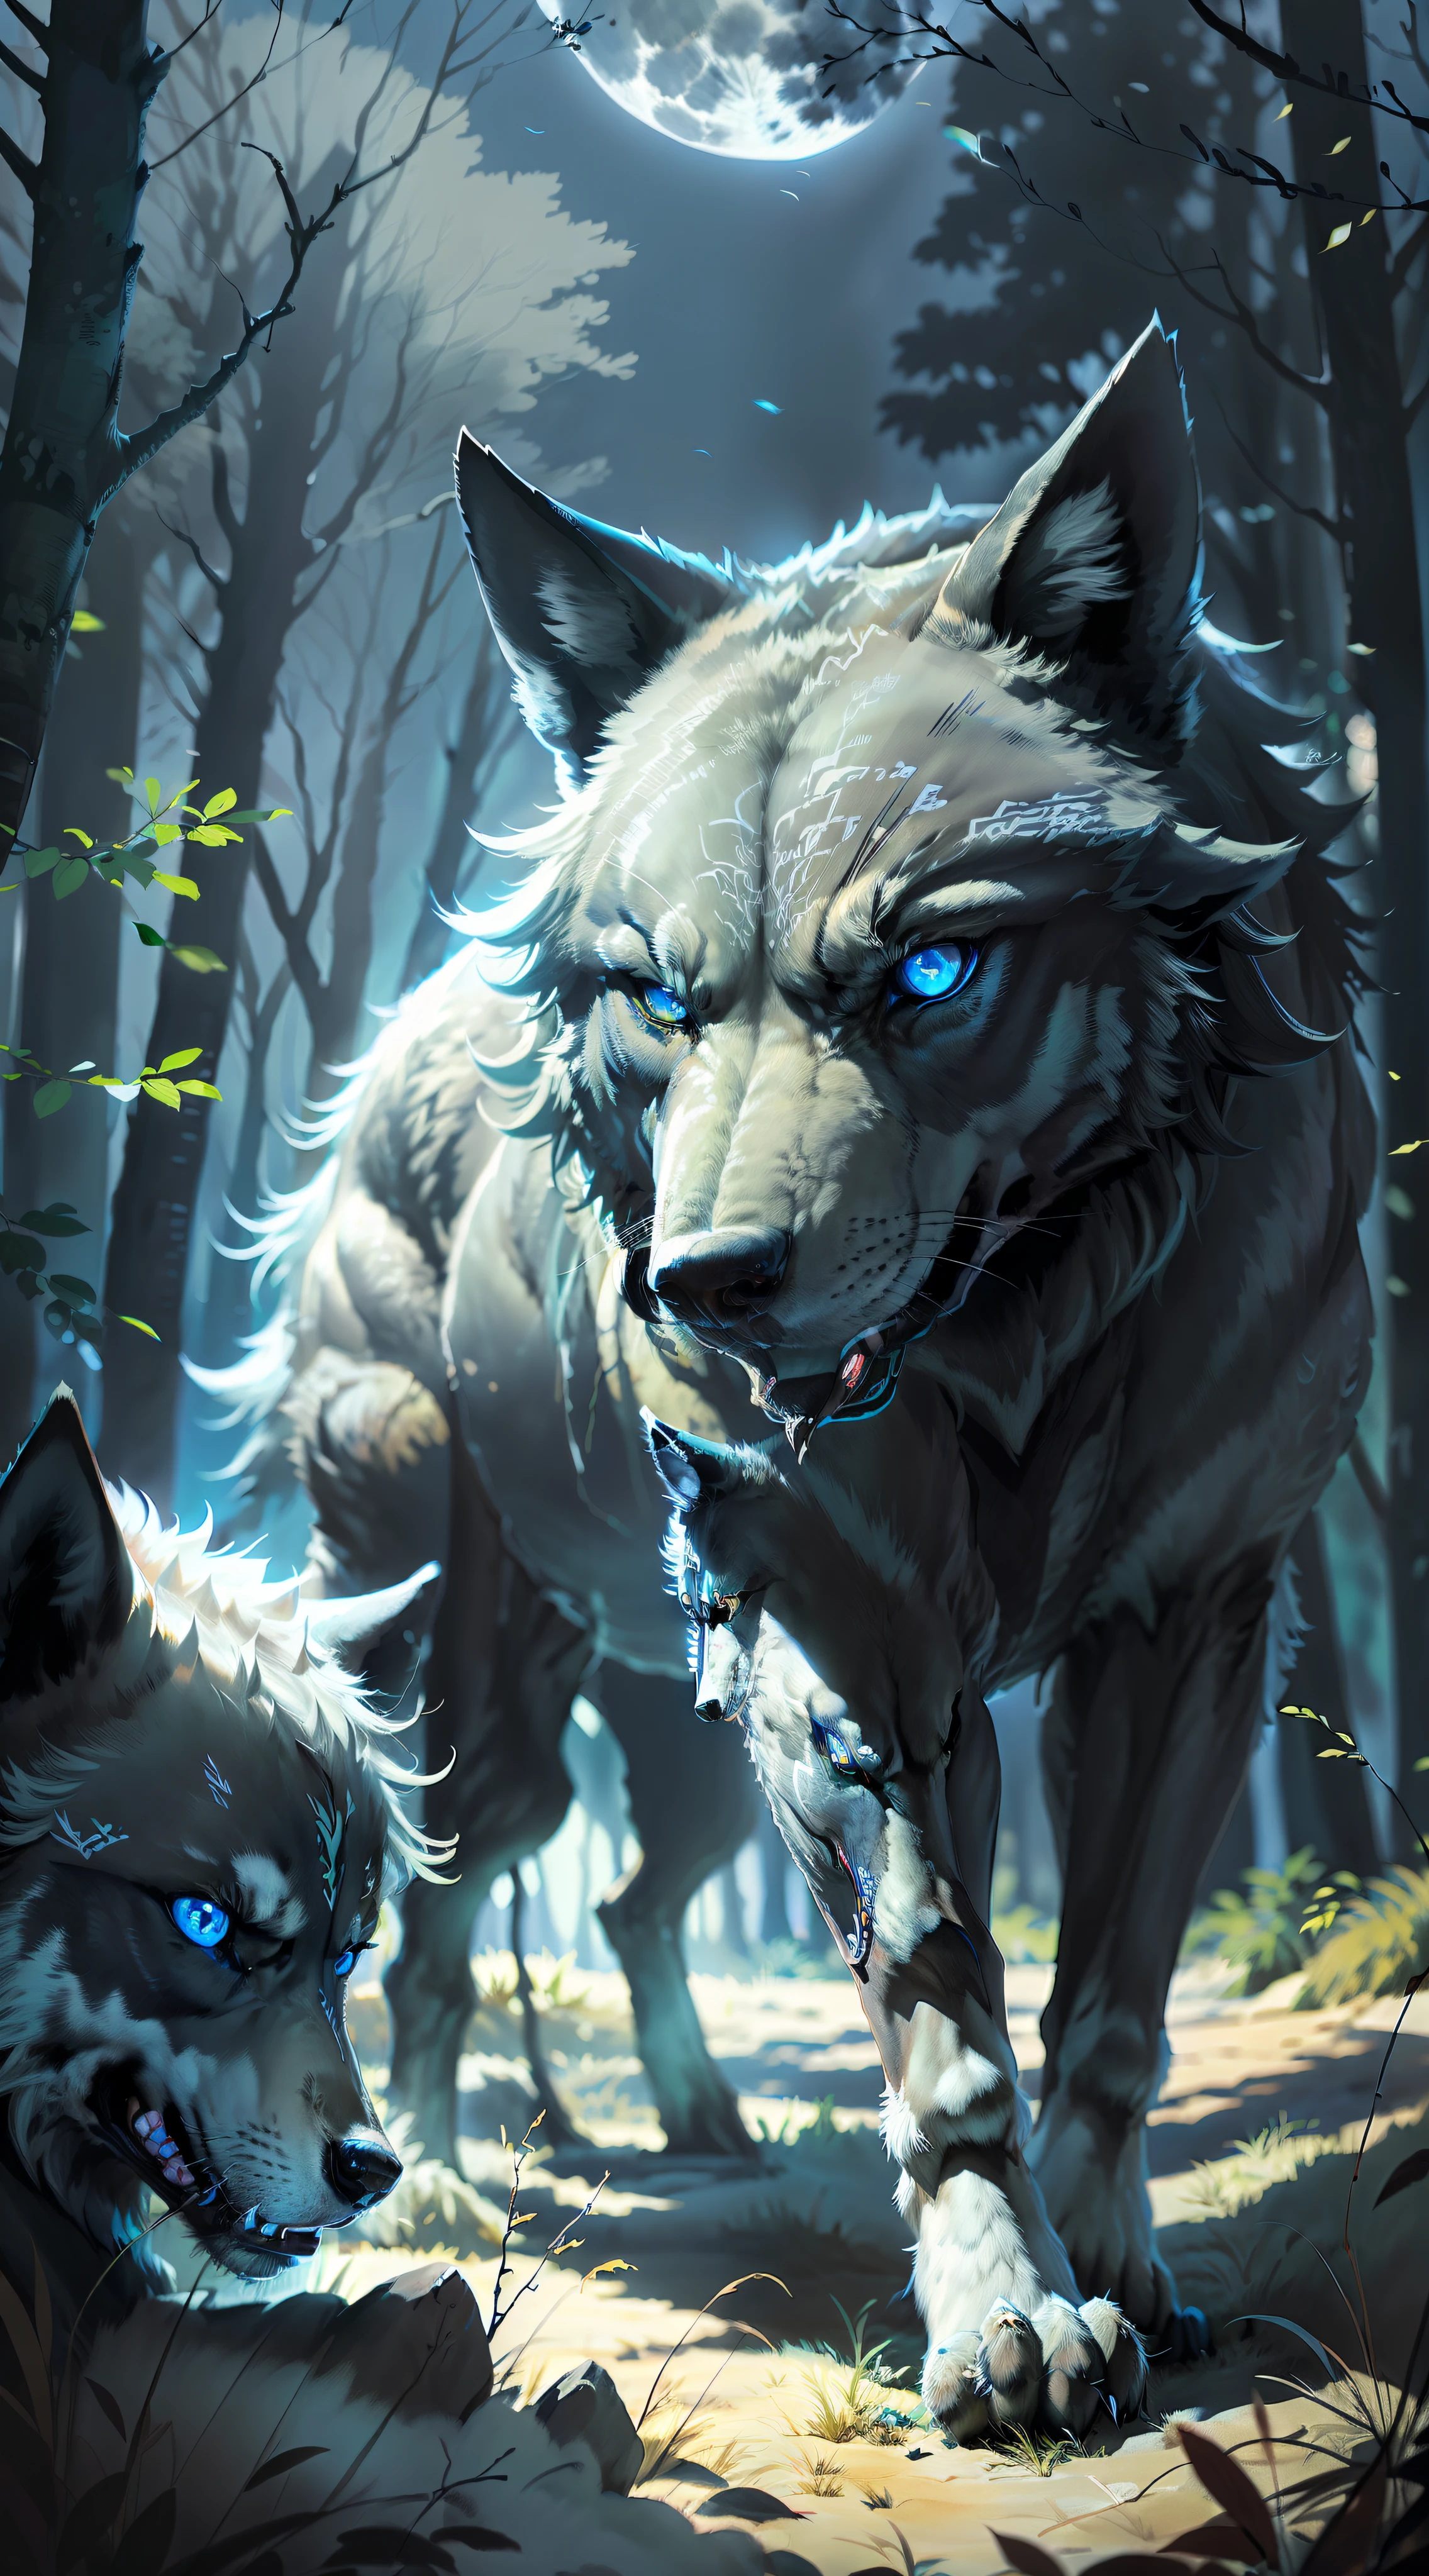 (Imagem aberta fotorrealista) Super lobo protetor da matilha, "cor pretaed wolf bright blue eyes." Matilha canina de lobos, ( lua cheia, floresta noturna) "cor preta"